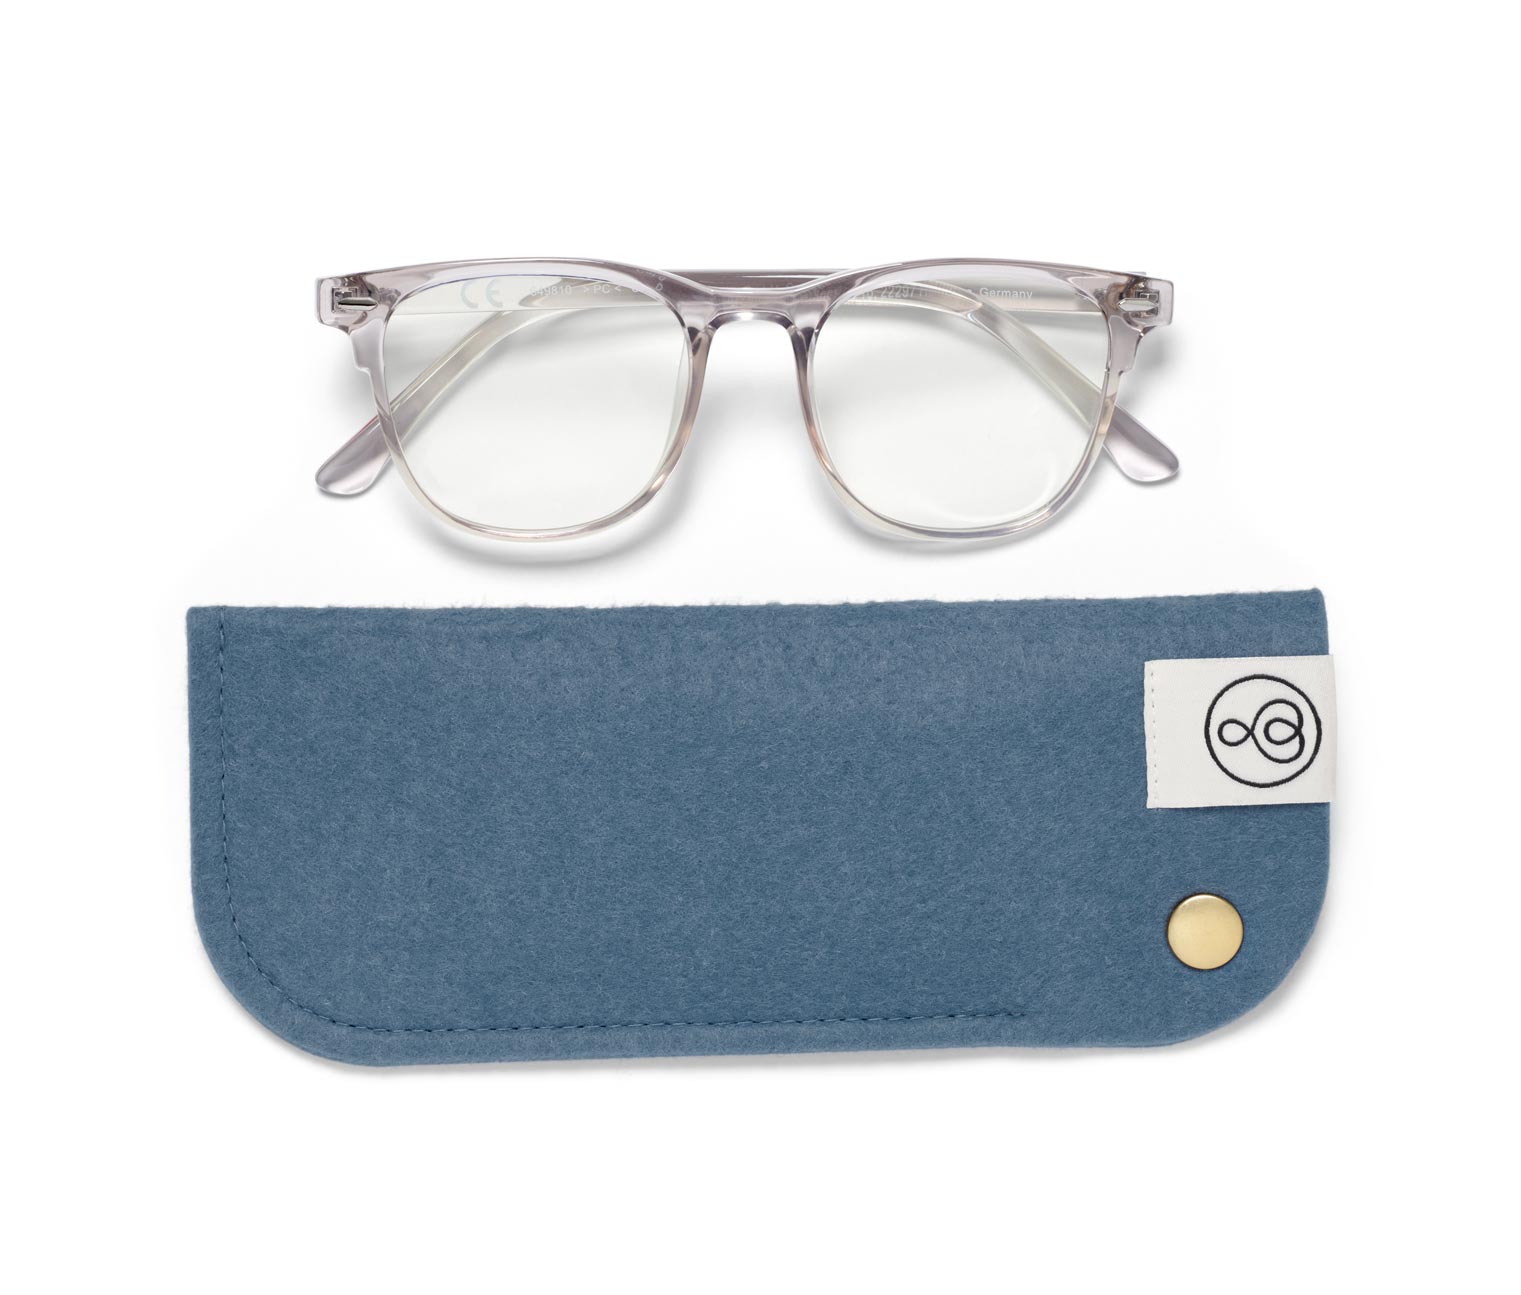 Blaulichtfilter Brille ohne Sehstärke online bestellen bei Tchibo 649810